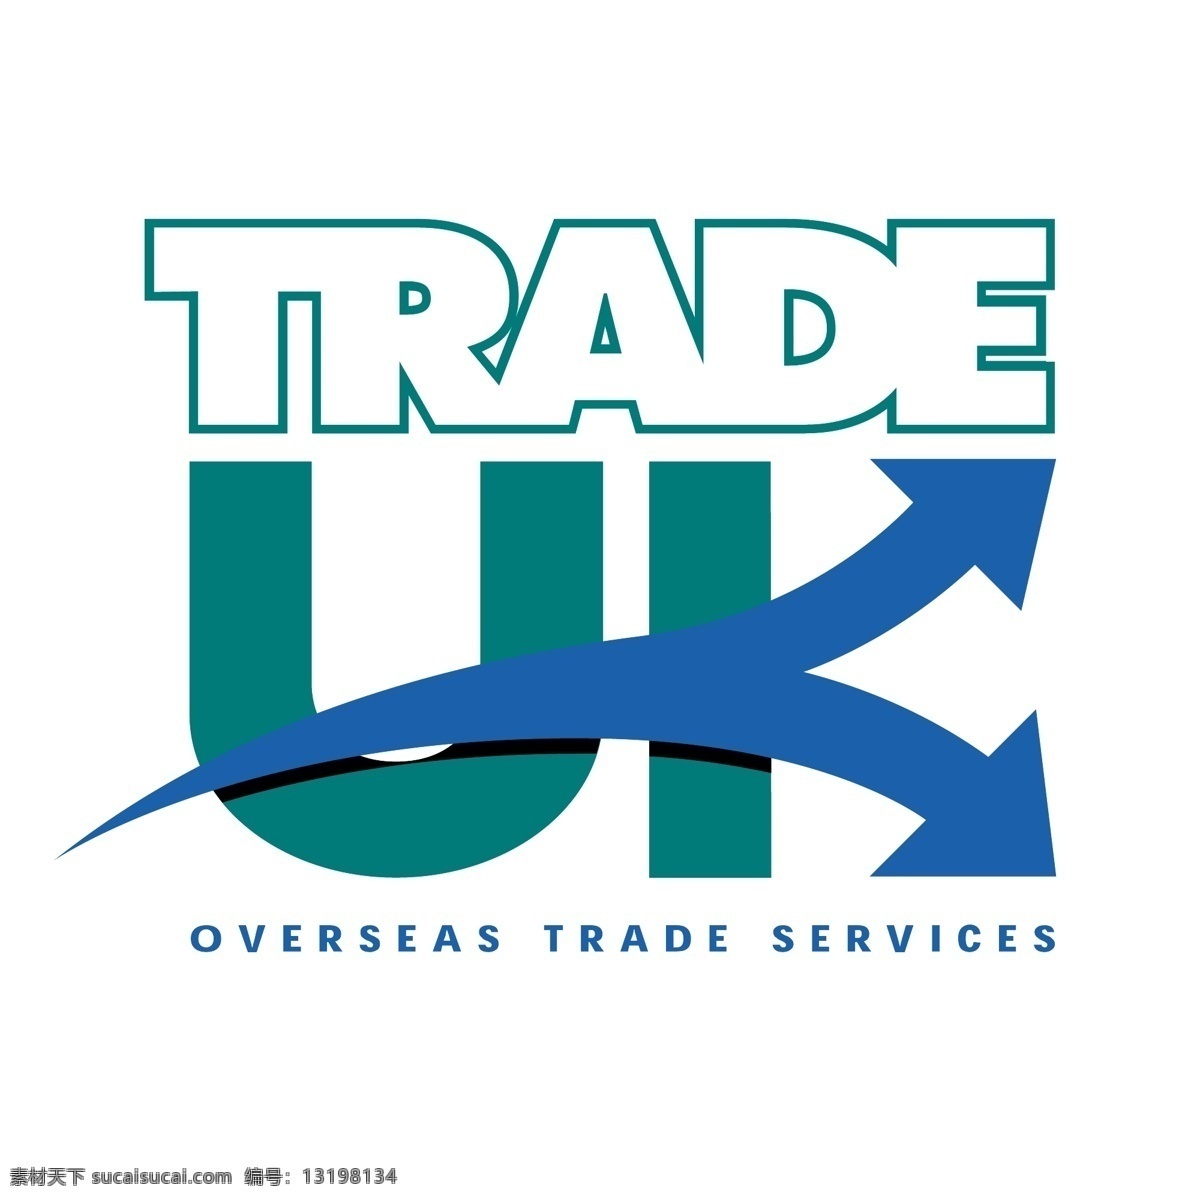 贸易 免费矢量 英国 商业 标志 矢量 英国贸易标志 英国的贸易 英国免费矢量 艺术 载体 免费 英国自由 自由 图形 建筑家居